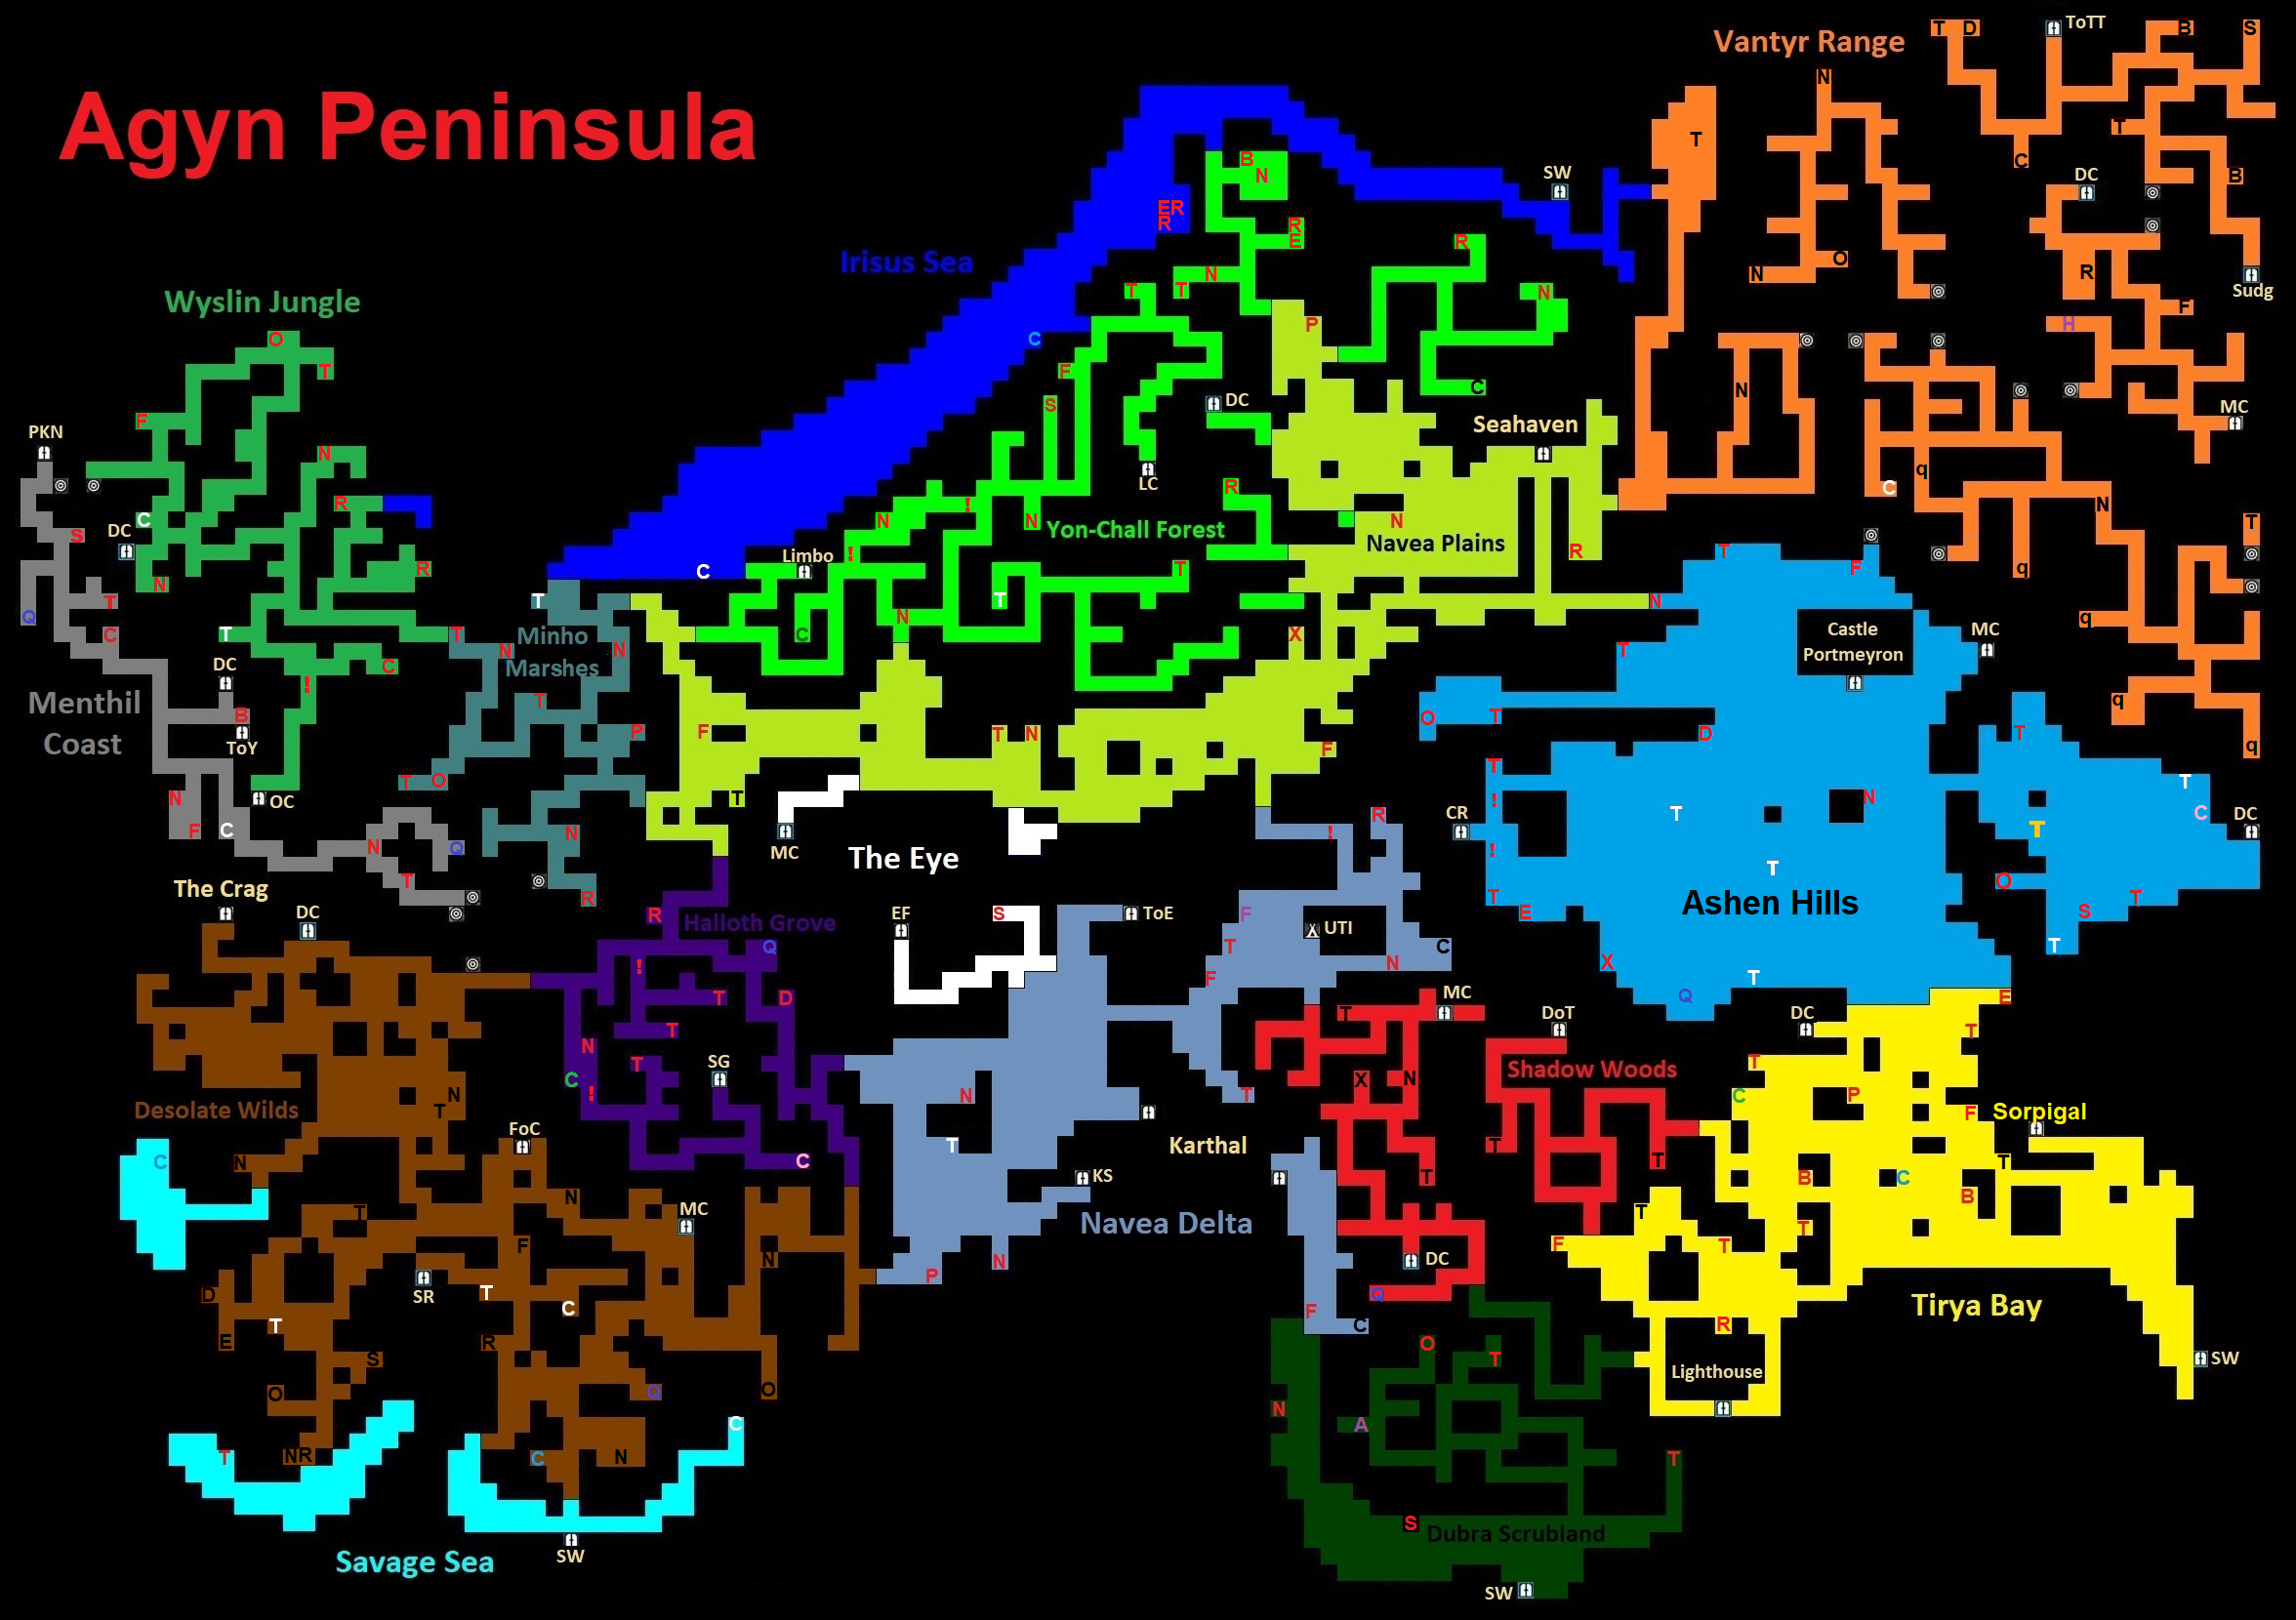 Agyn Peninsula